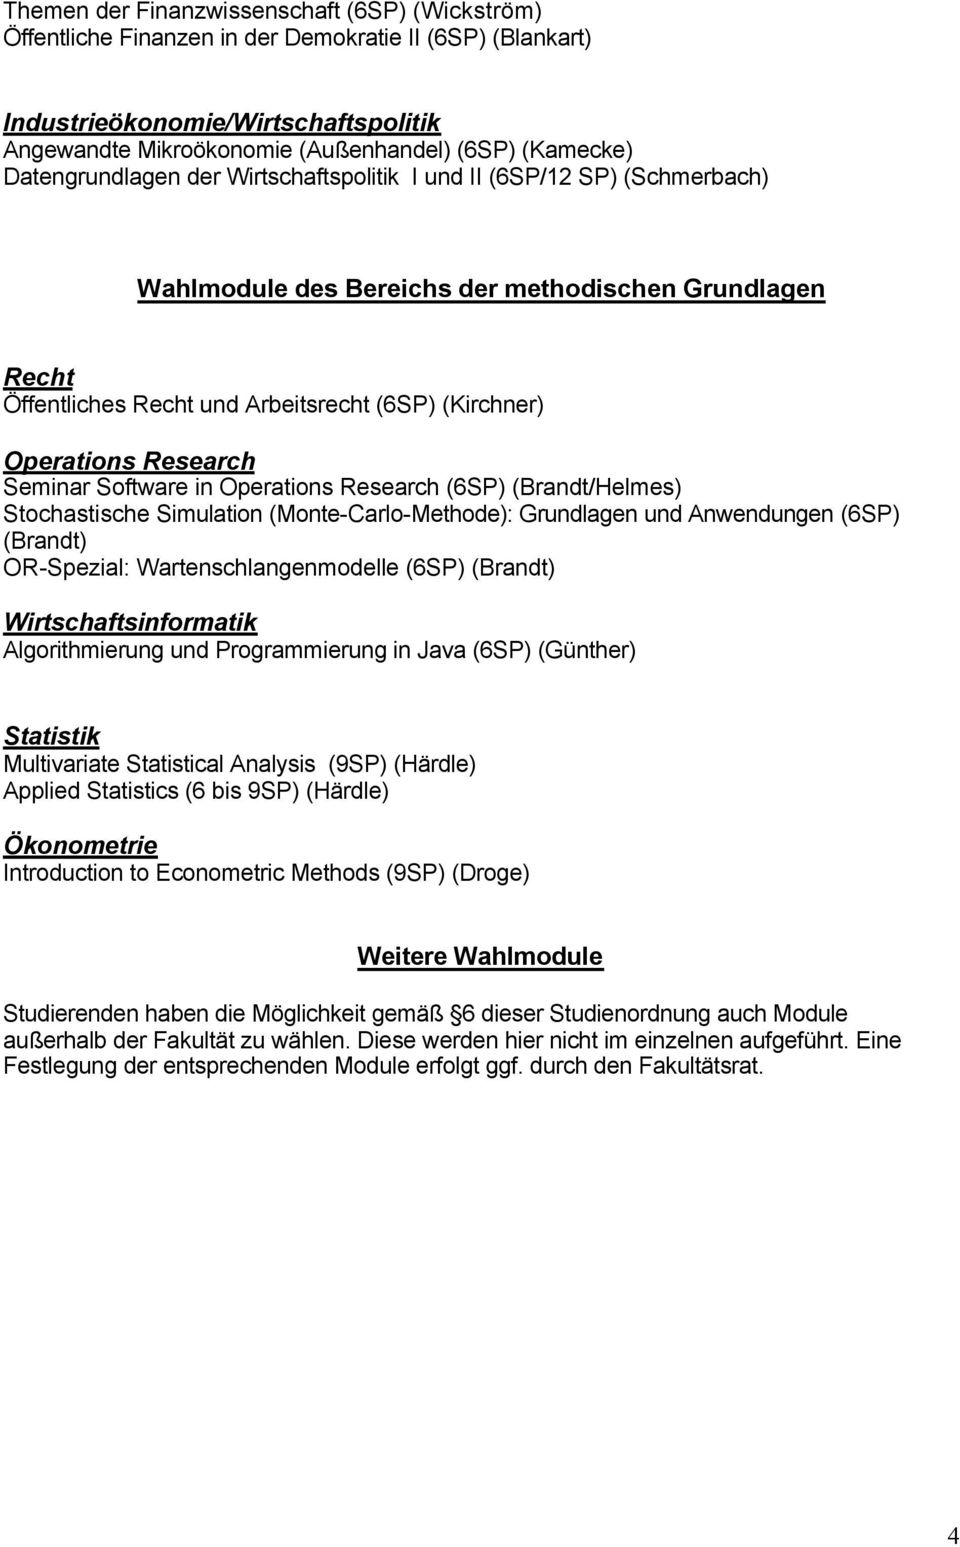 Seminar Software in Operations Research (6 (Brandt/Helmes) Stochastische Simulation (Monte-Carlo-Methode): Grundlagen und Anwendungen (6 (Brandt) OR-Spezial: Wartenschlangenmodelle (6 (Brandt)